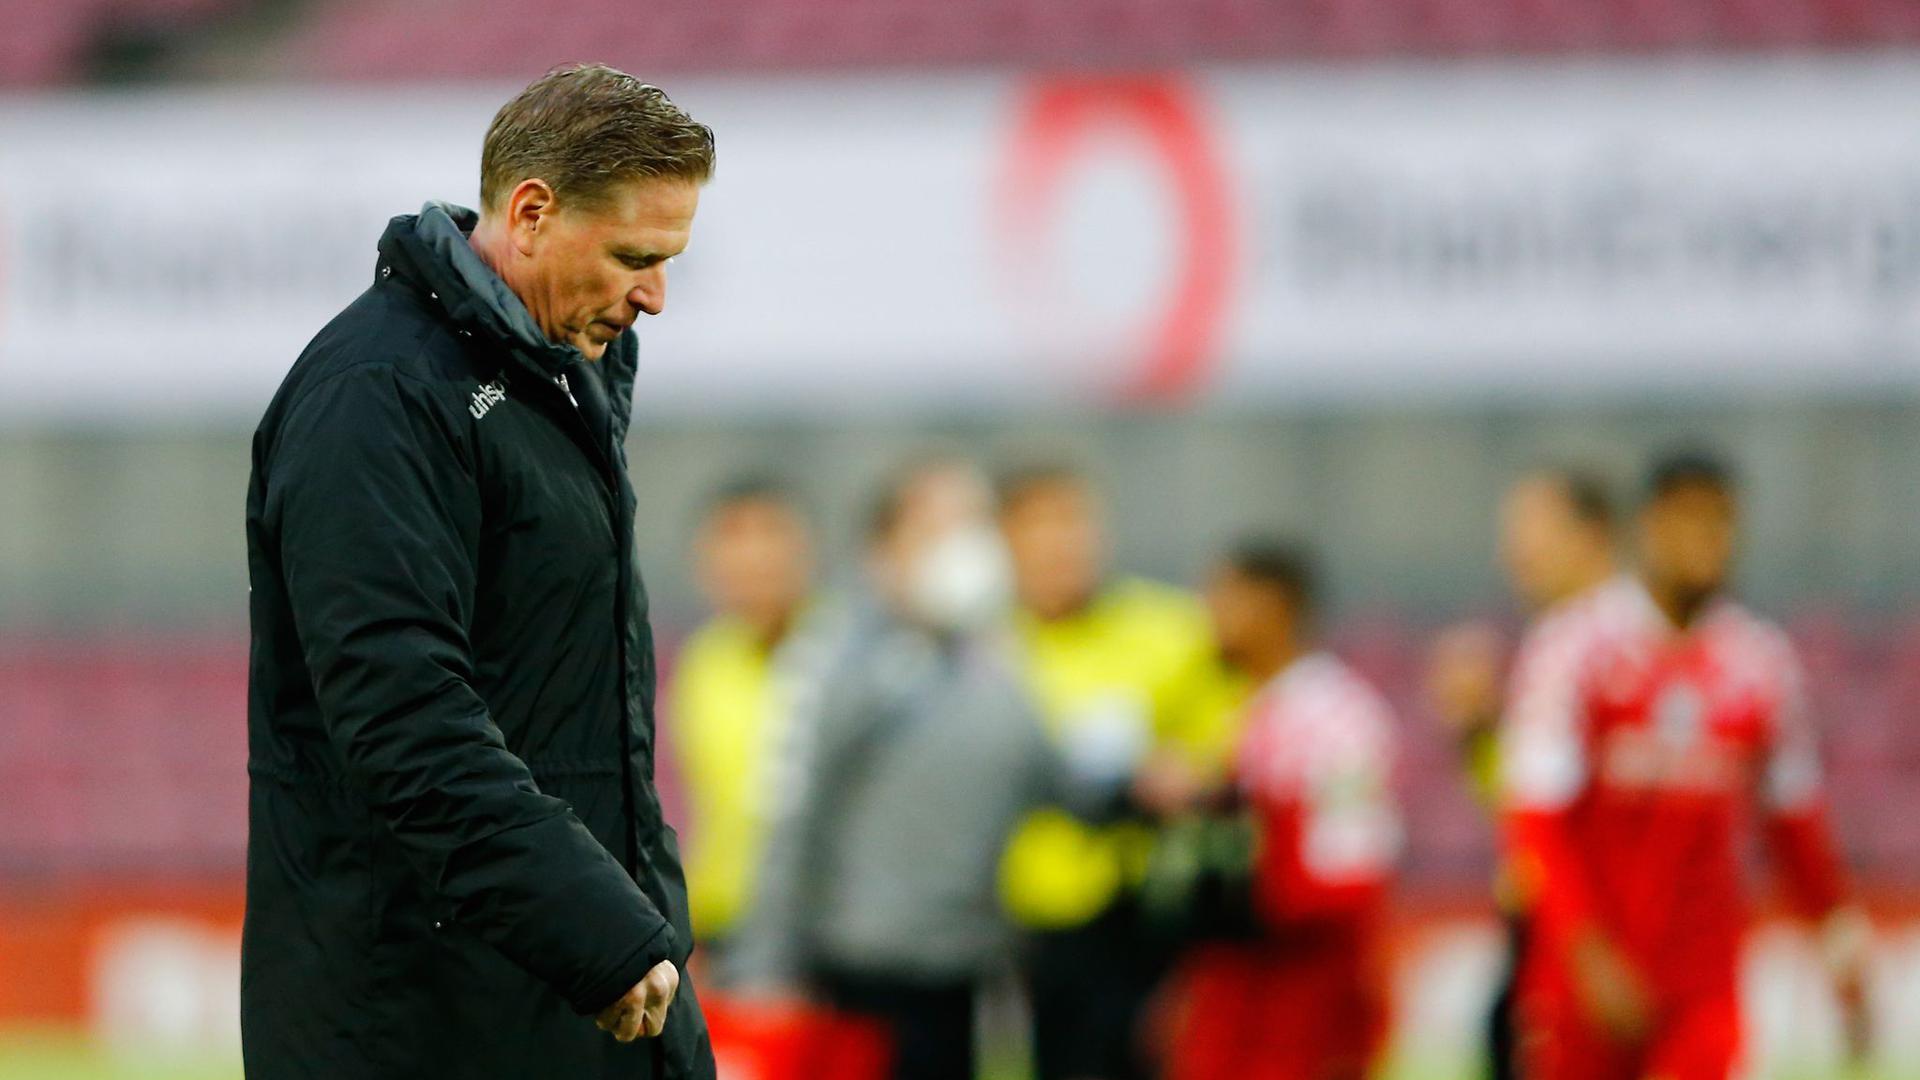 Kölns Trainer Markus Gisdol geht nach dem Spiel mit gesenktem Kopf über den Platz.